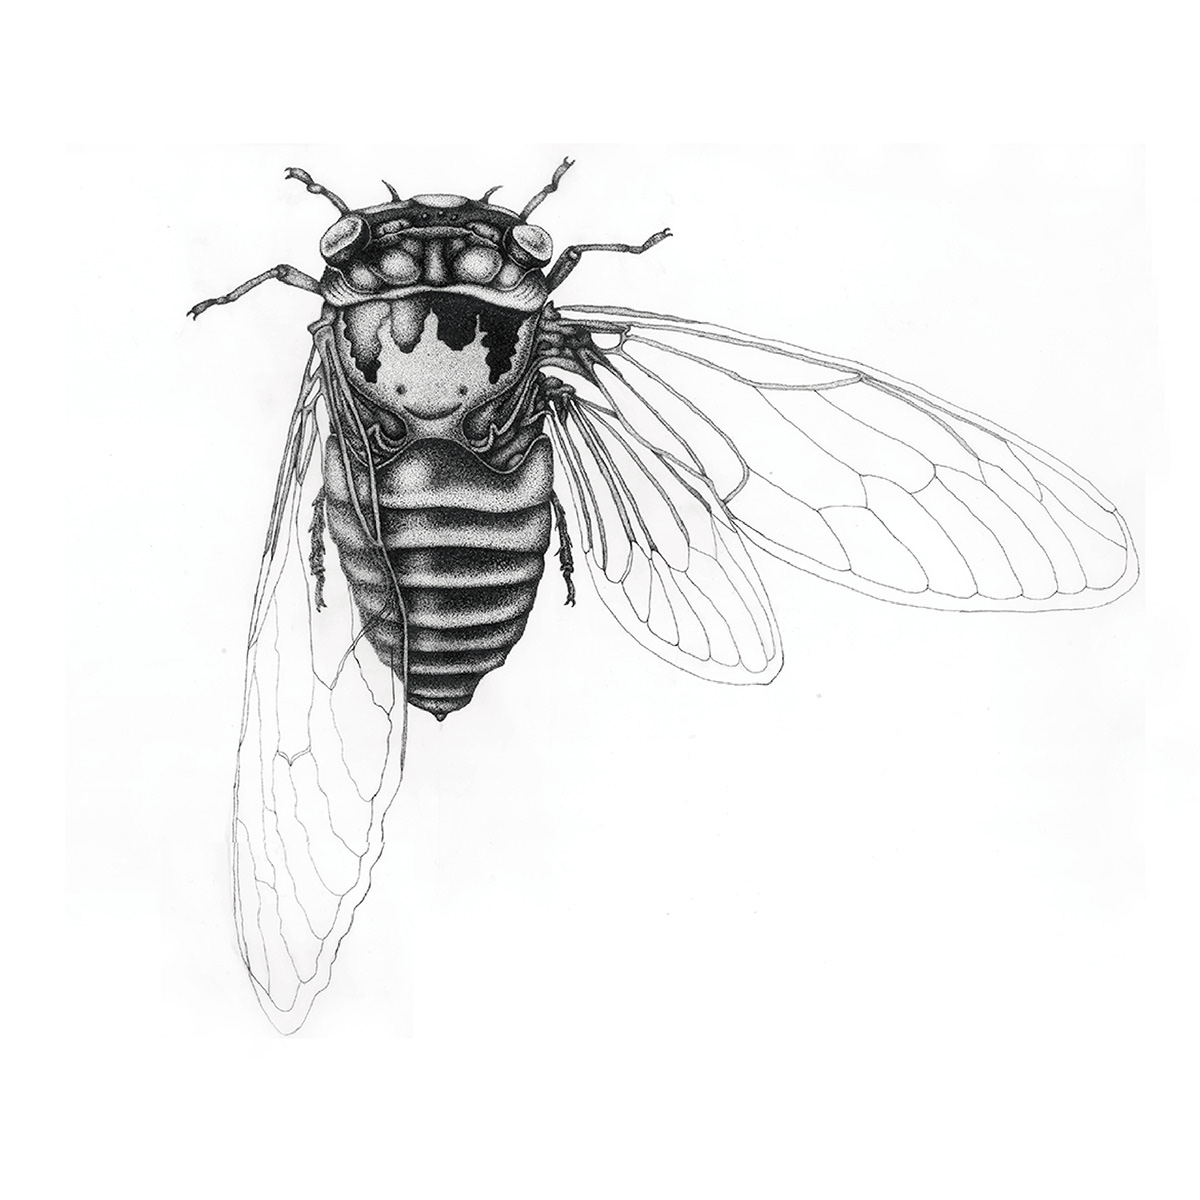 Adobe Portfolio chicharra cicada Cicadidae dotwork ilustracion ilustración científica ink insect Rotring